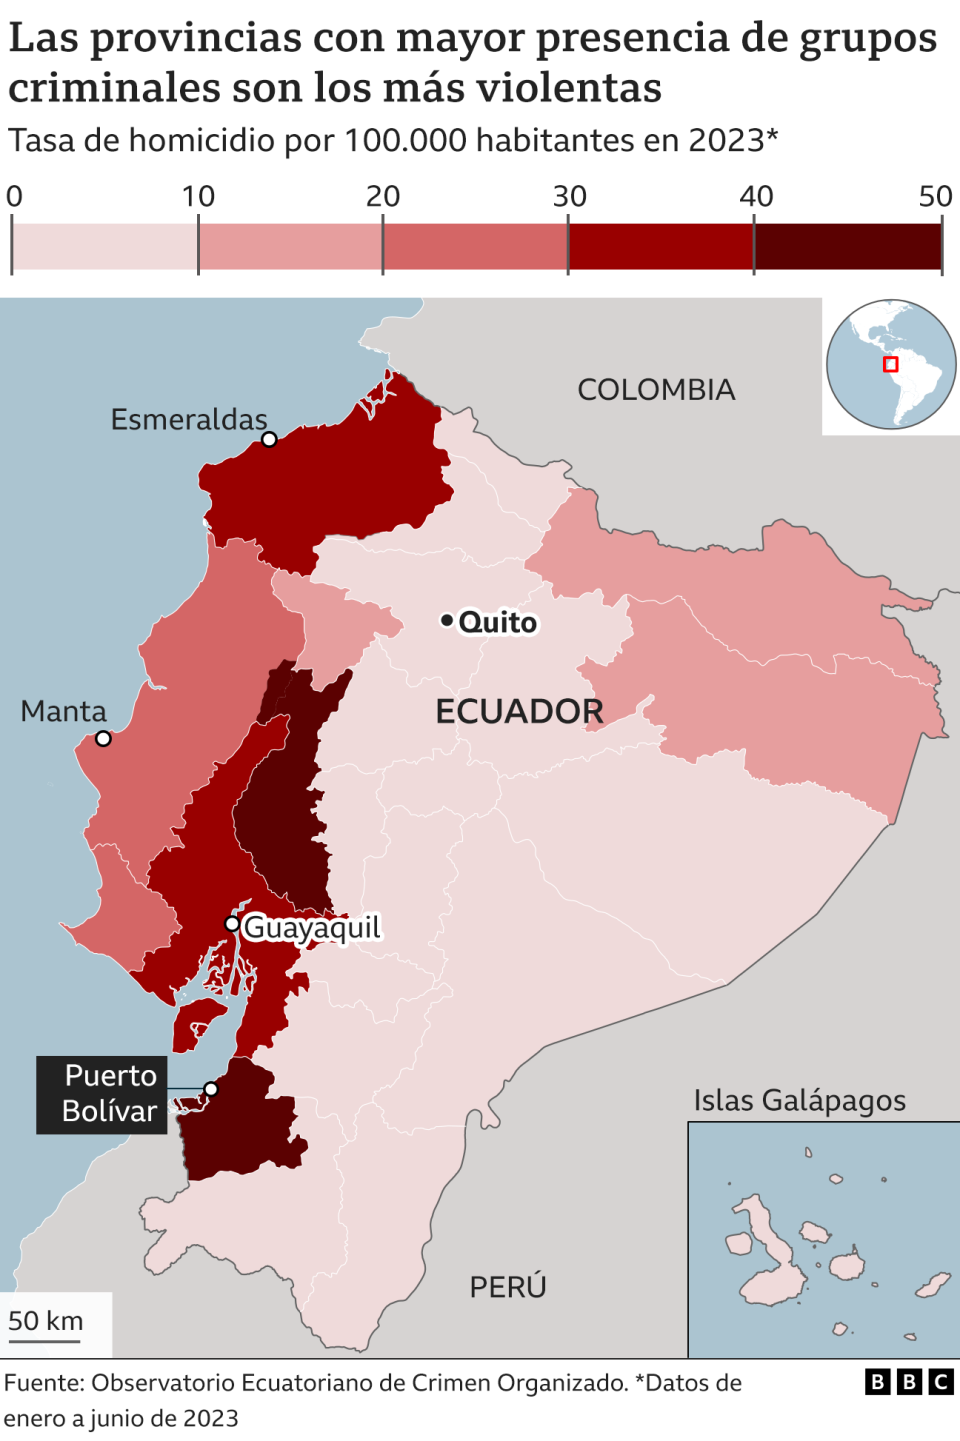 Gráfico sobre las provincias con más homicidios en Ecuador.